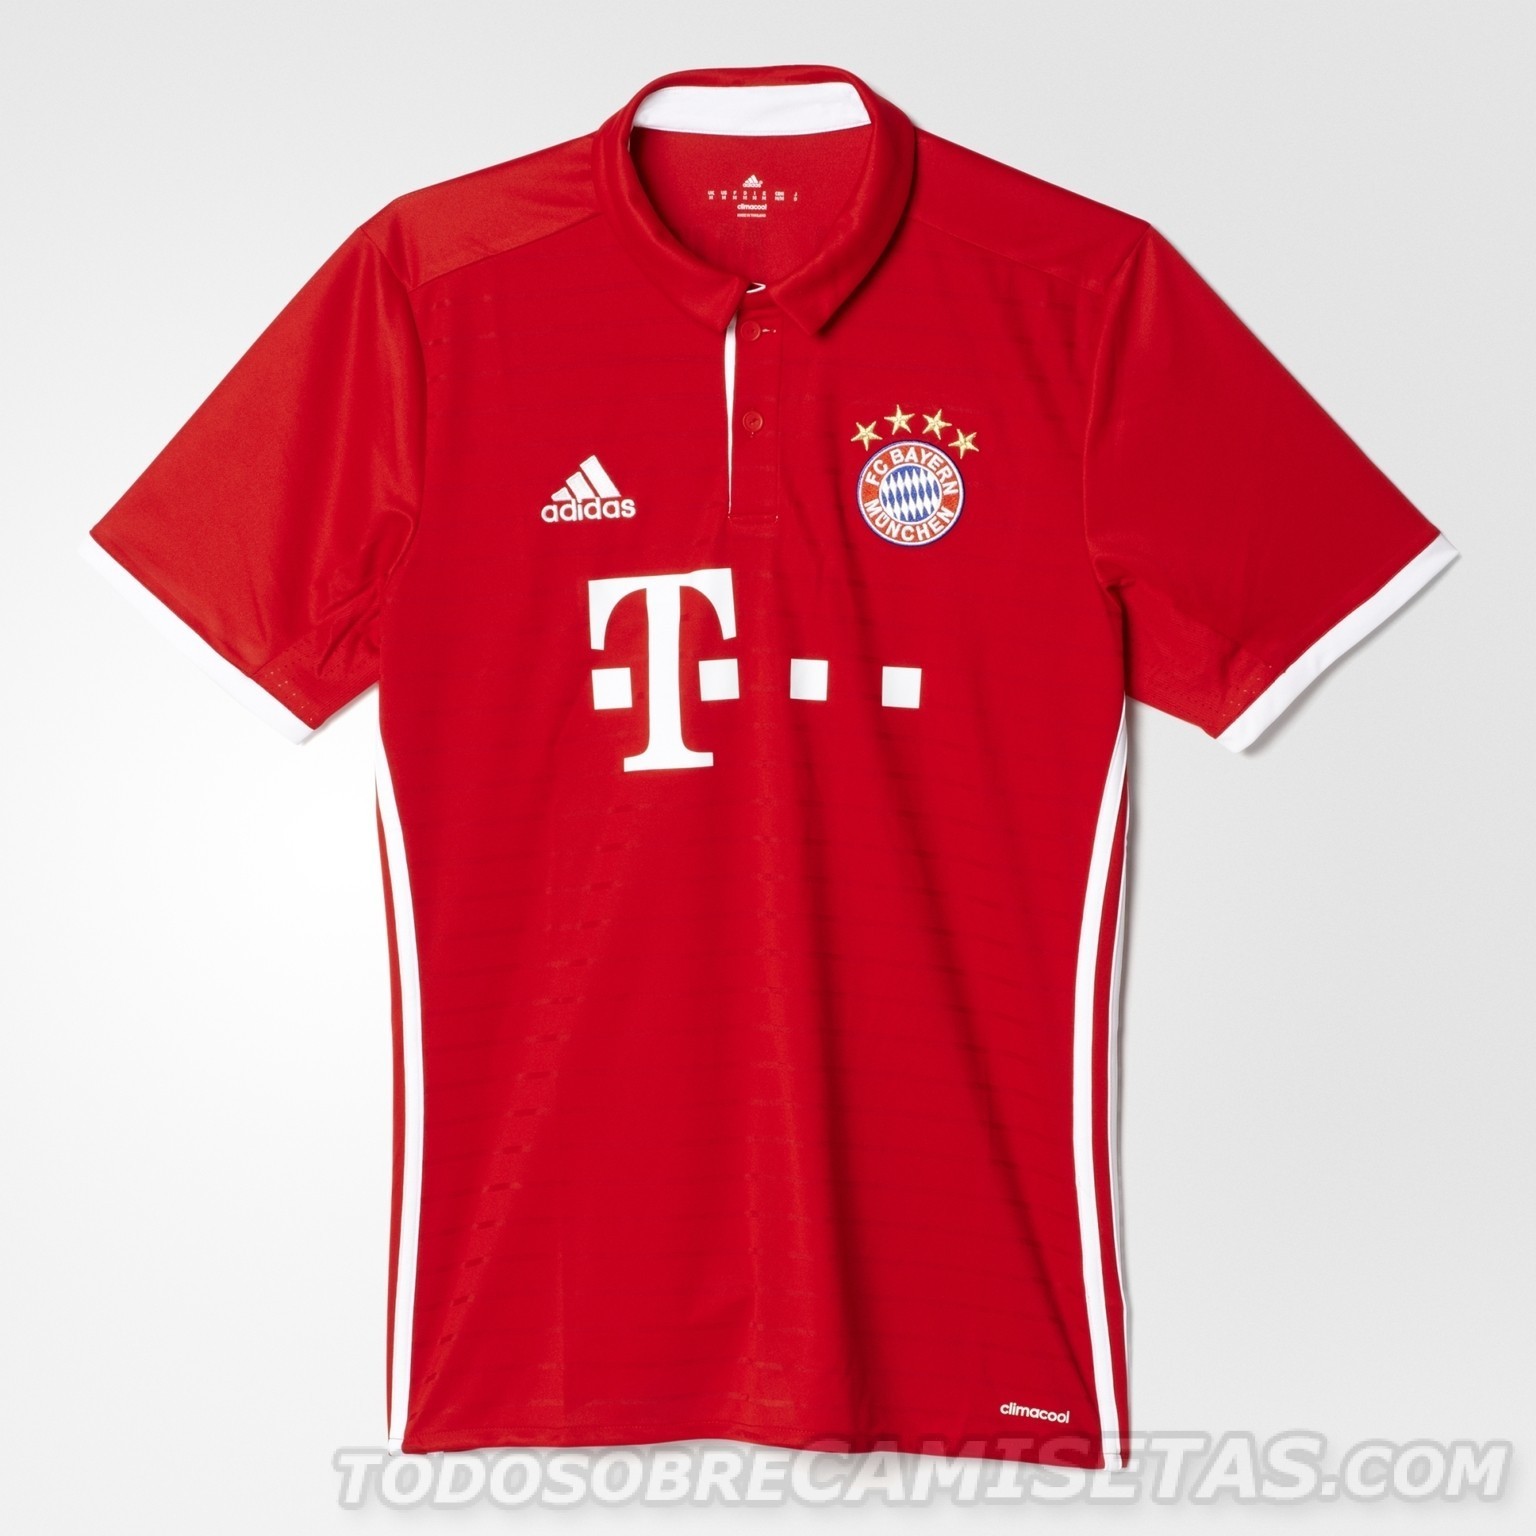 Bayern-Munich-2016-17-adidas-new-home-kit-4.jpg